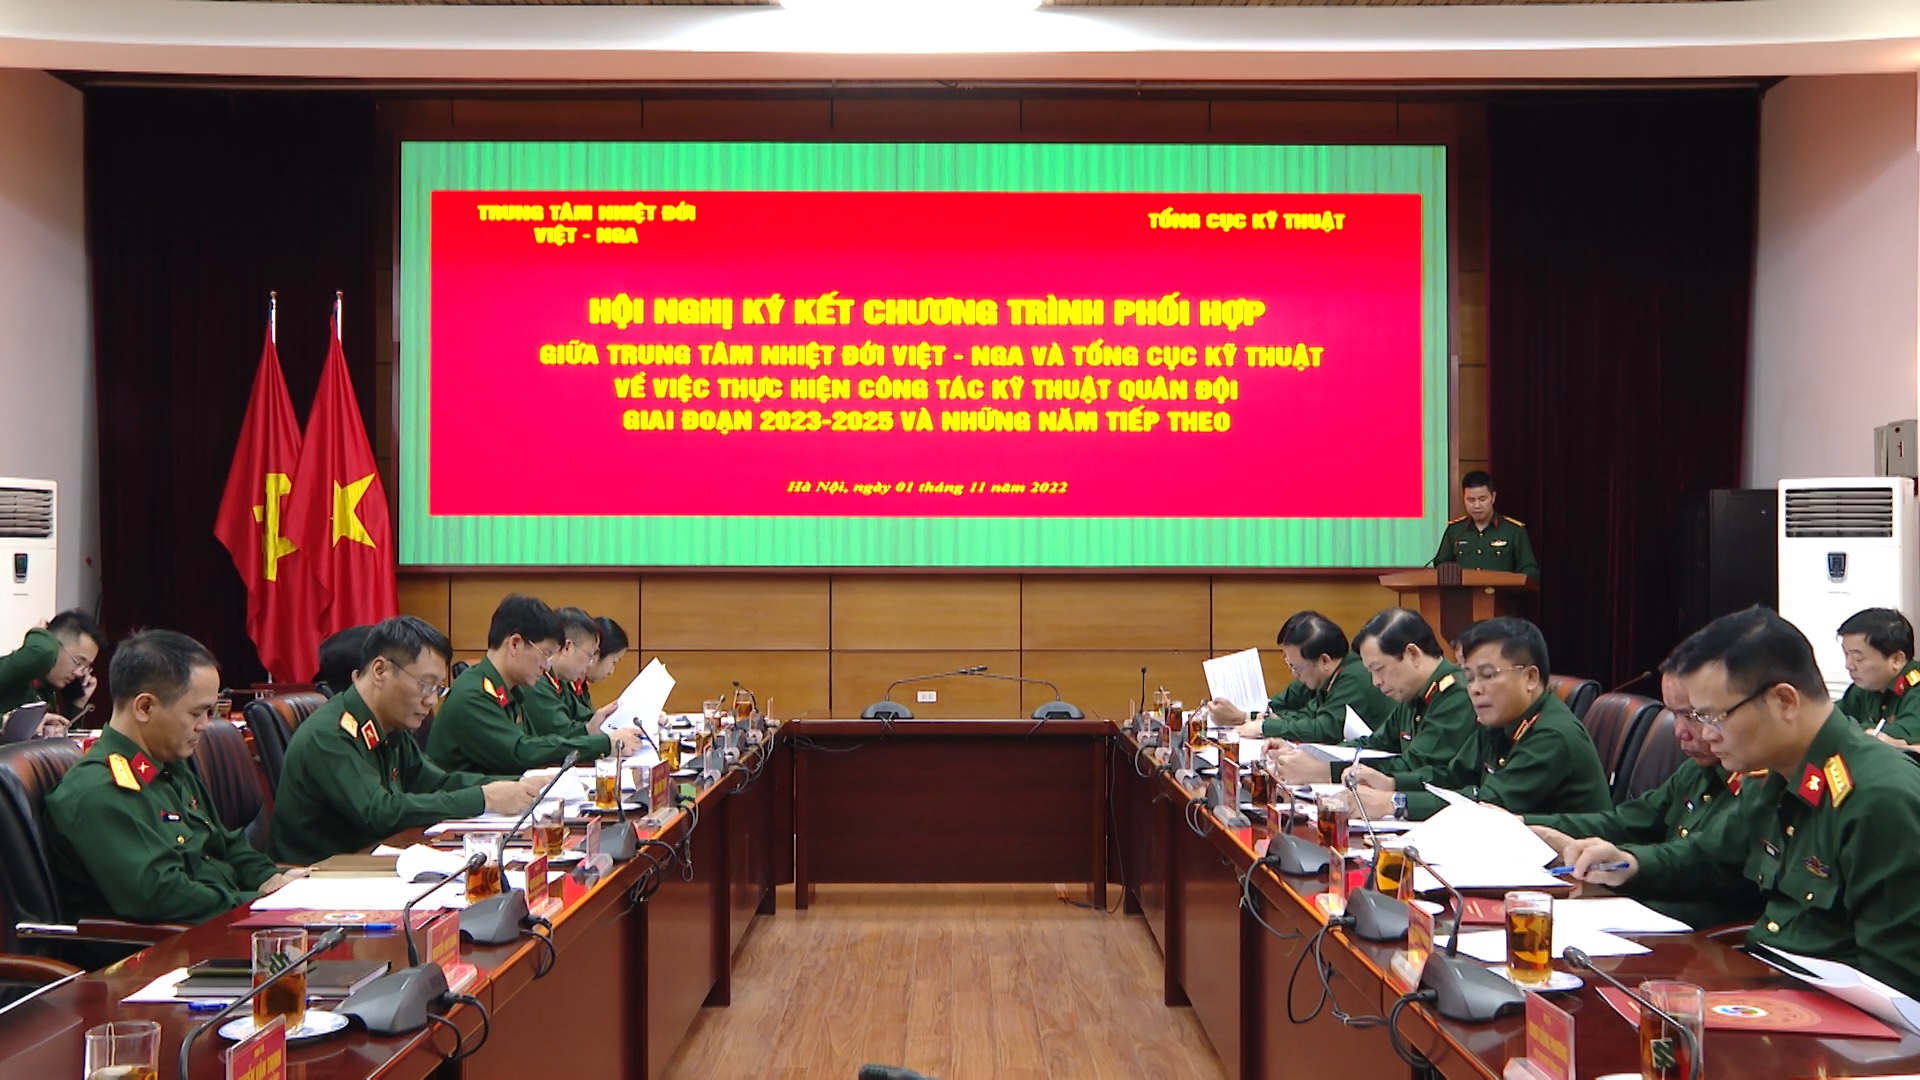 Hội nghị Ký kết Chương trình phối hợp giữa Trung tâm Nhiệt đới Việt - Nga và Tổng cục Kỹ thuật về thực hiện công tác kỹ thuật Quân đội giai đoạn 2023 - 2025 và những năm tiếp theo